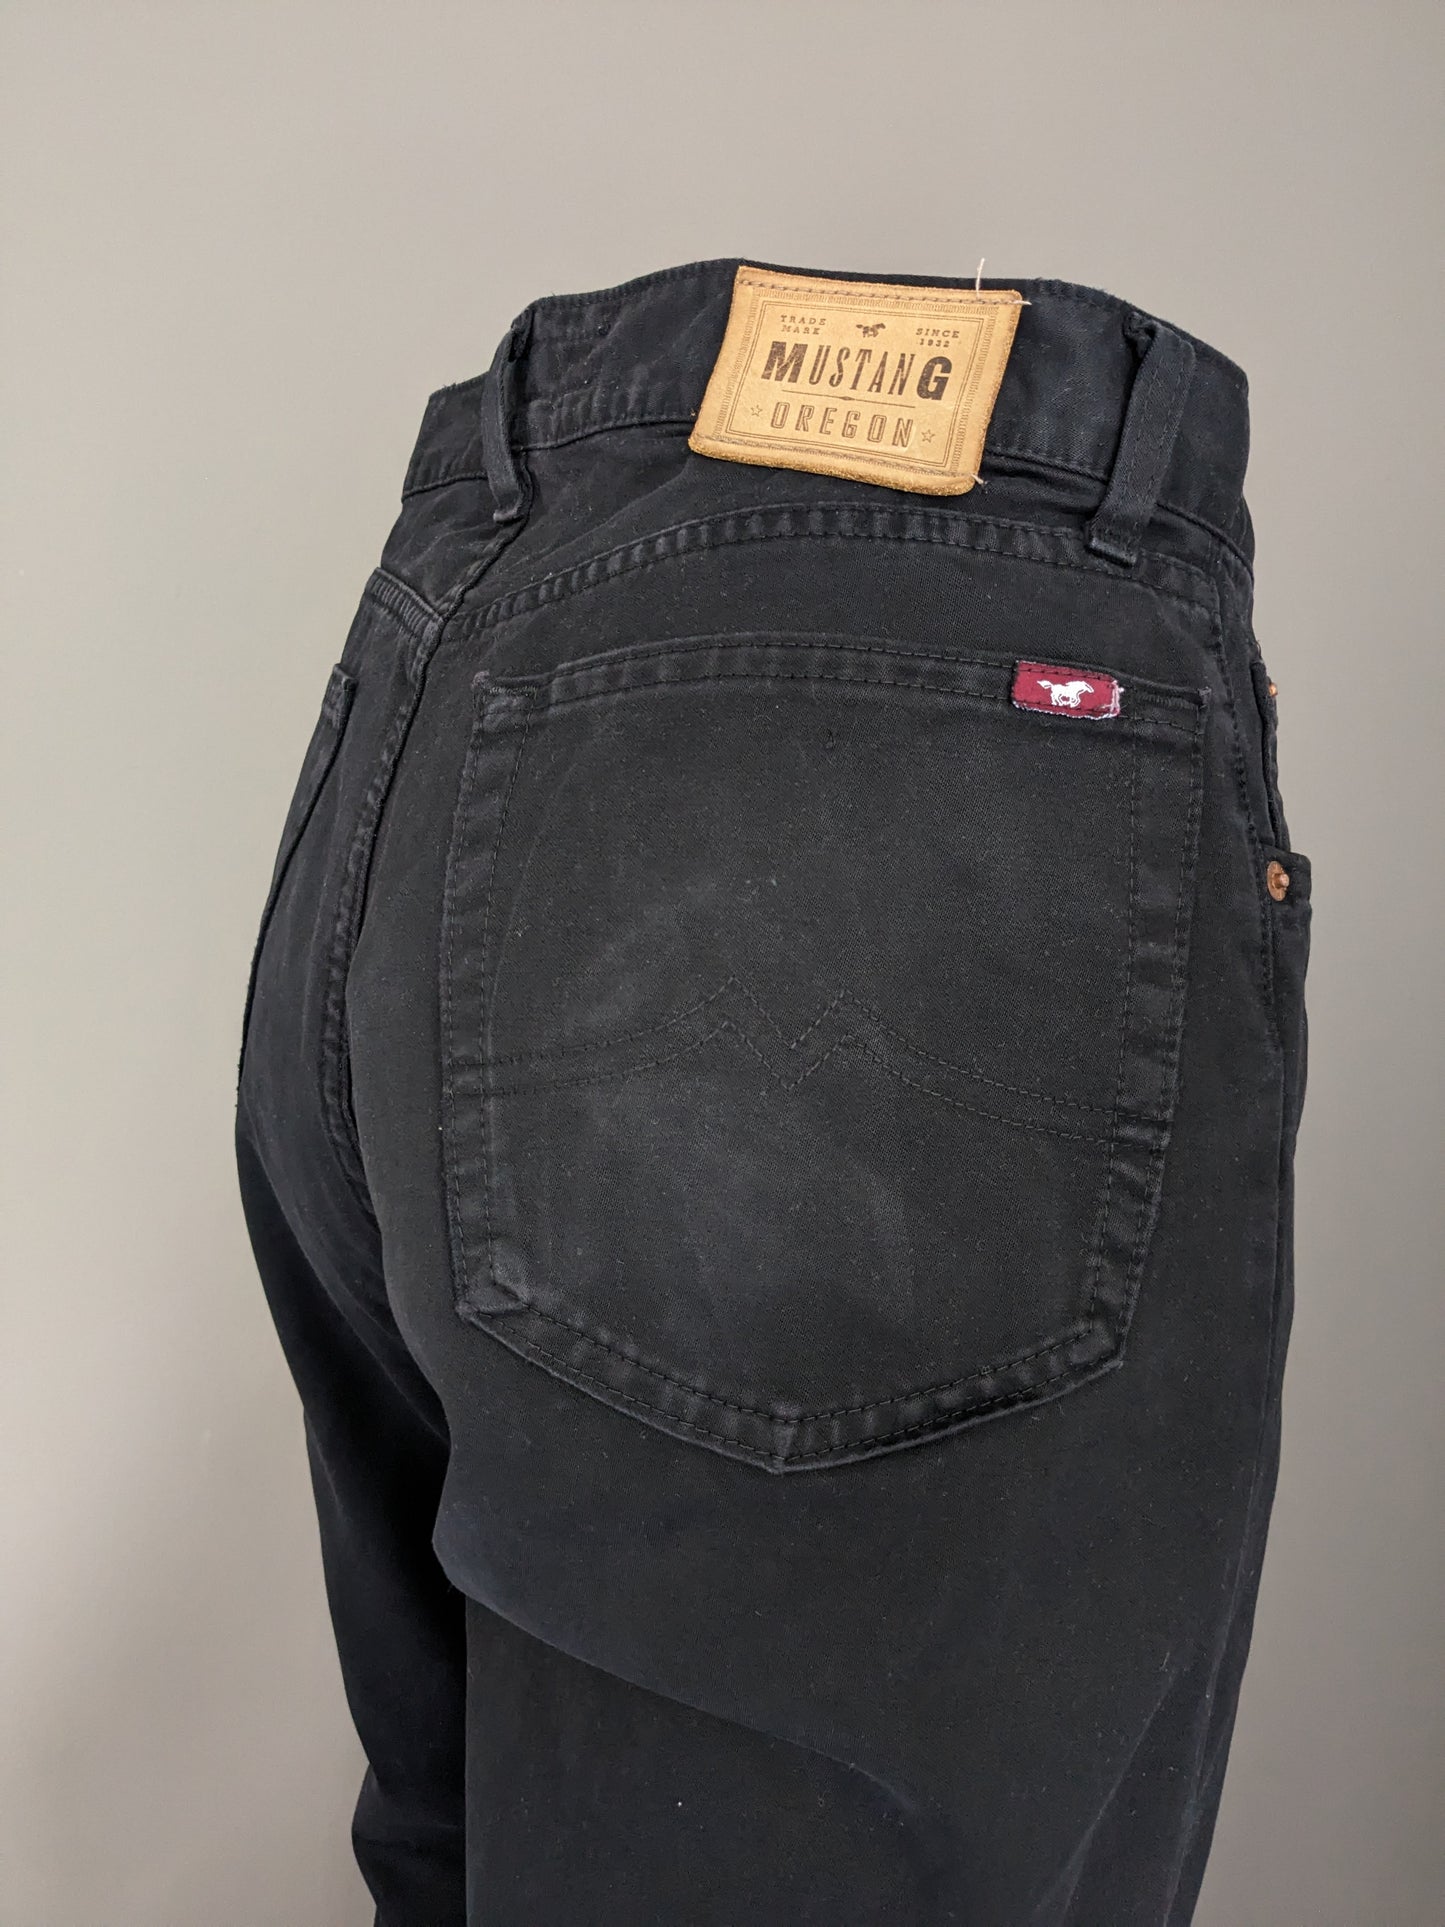 Jeans Mustang * Oregon *. Couleur noire. Taille W35 - L36.